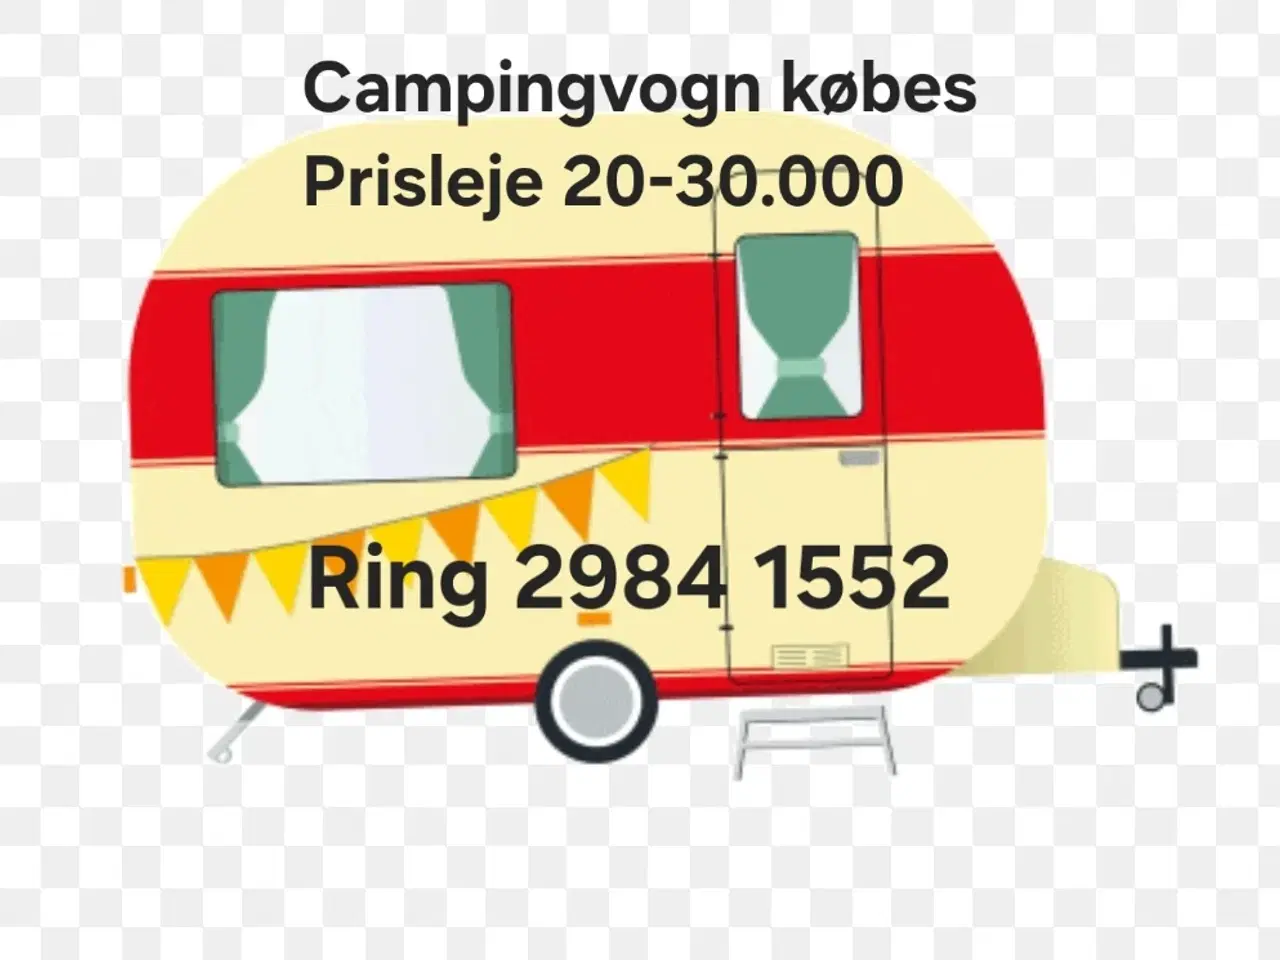 Billede 1 - Campingvogn købes prisleje kr. 20-30.000 